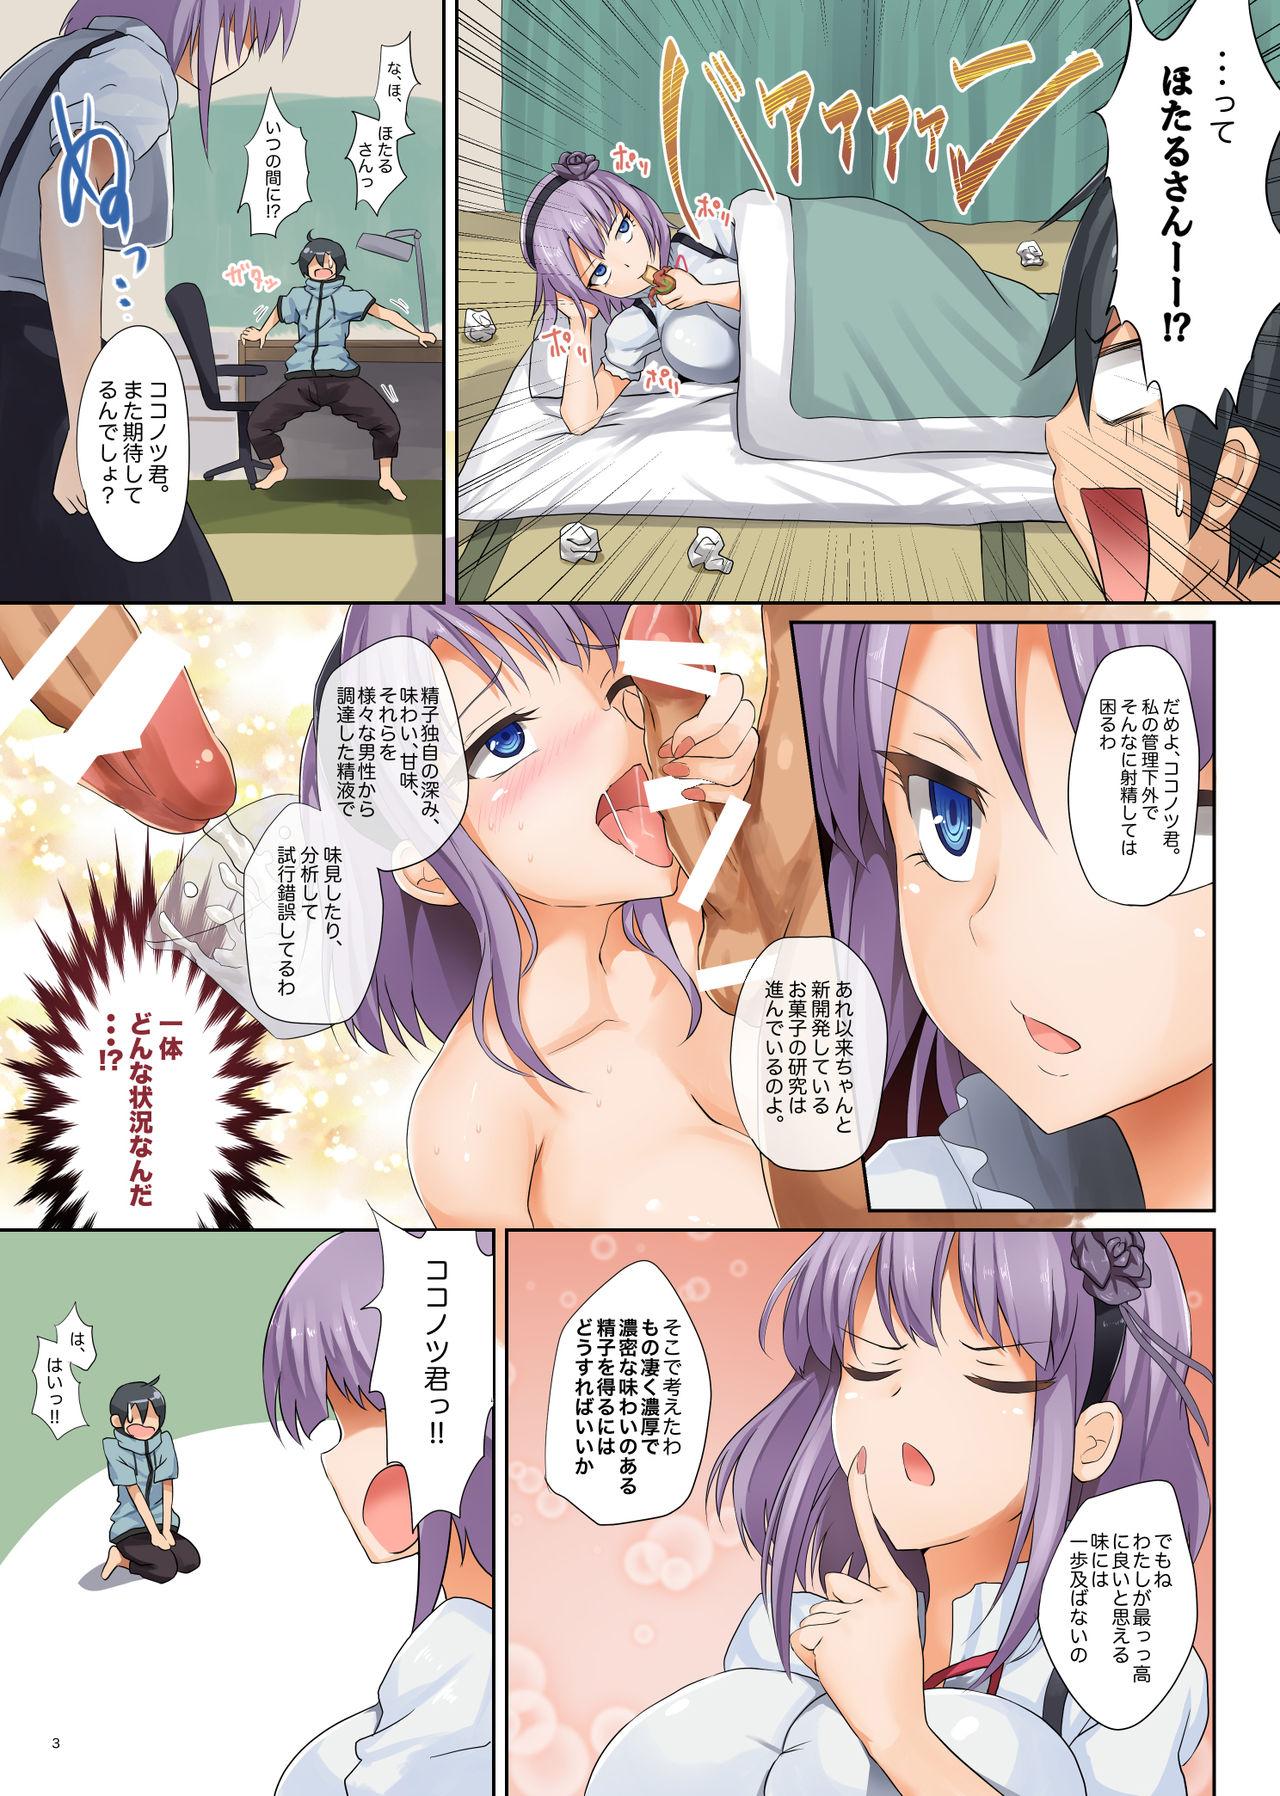 Livesex Seika no Musume Daga, Shikashi Hentai 2 - Dagashi kashi Mujer - Page 3